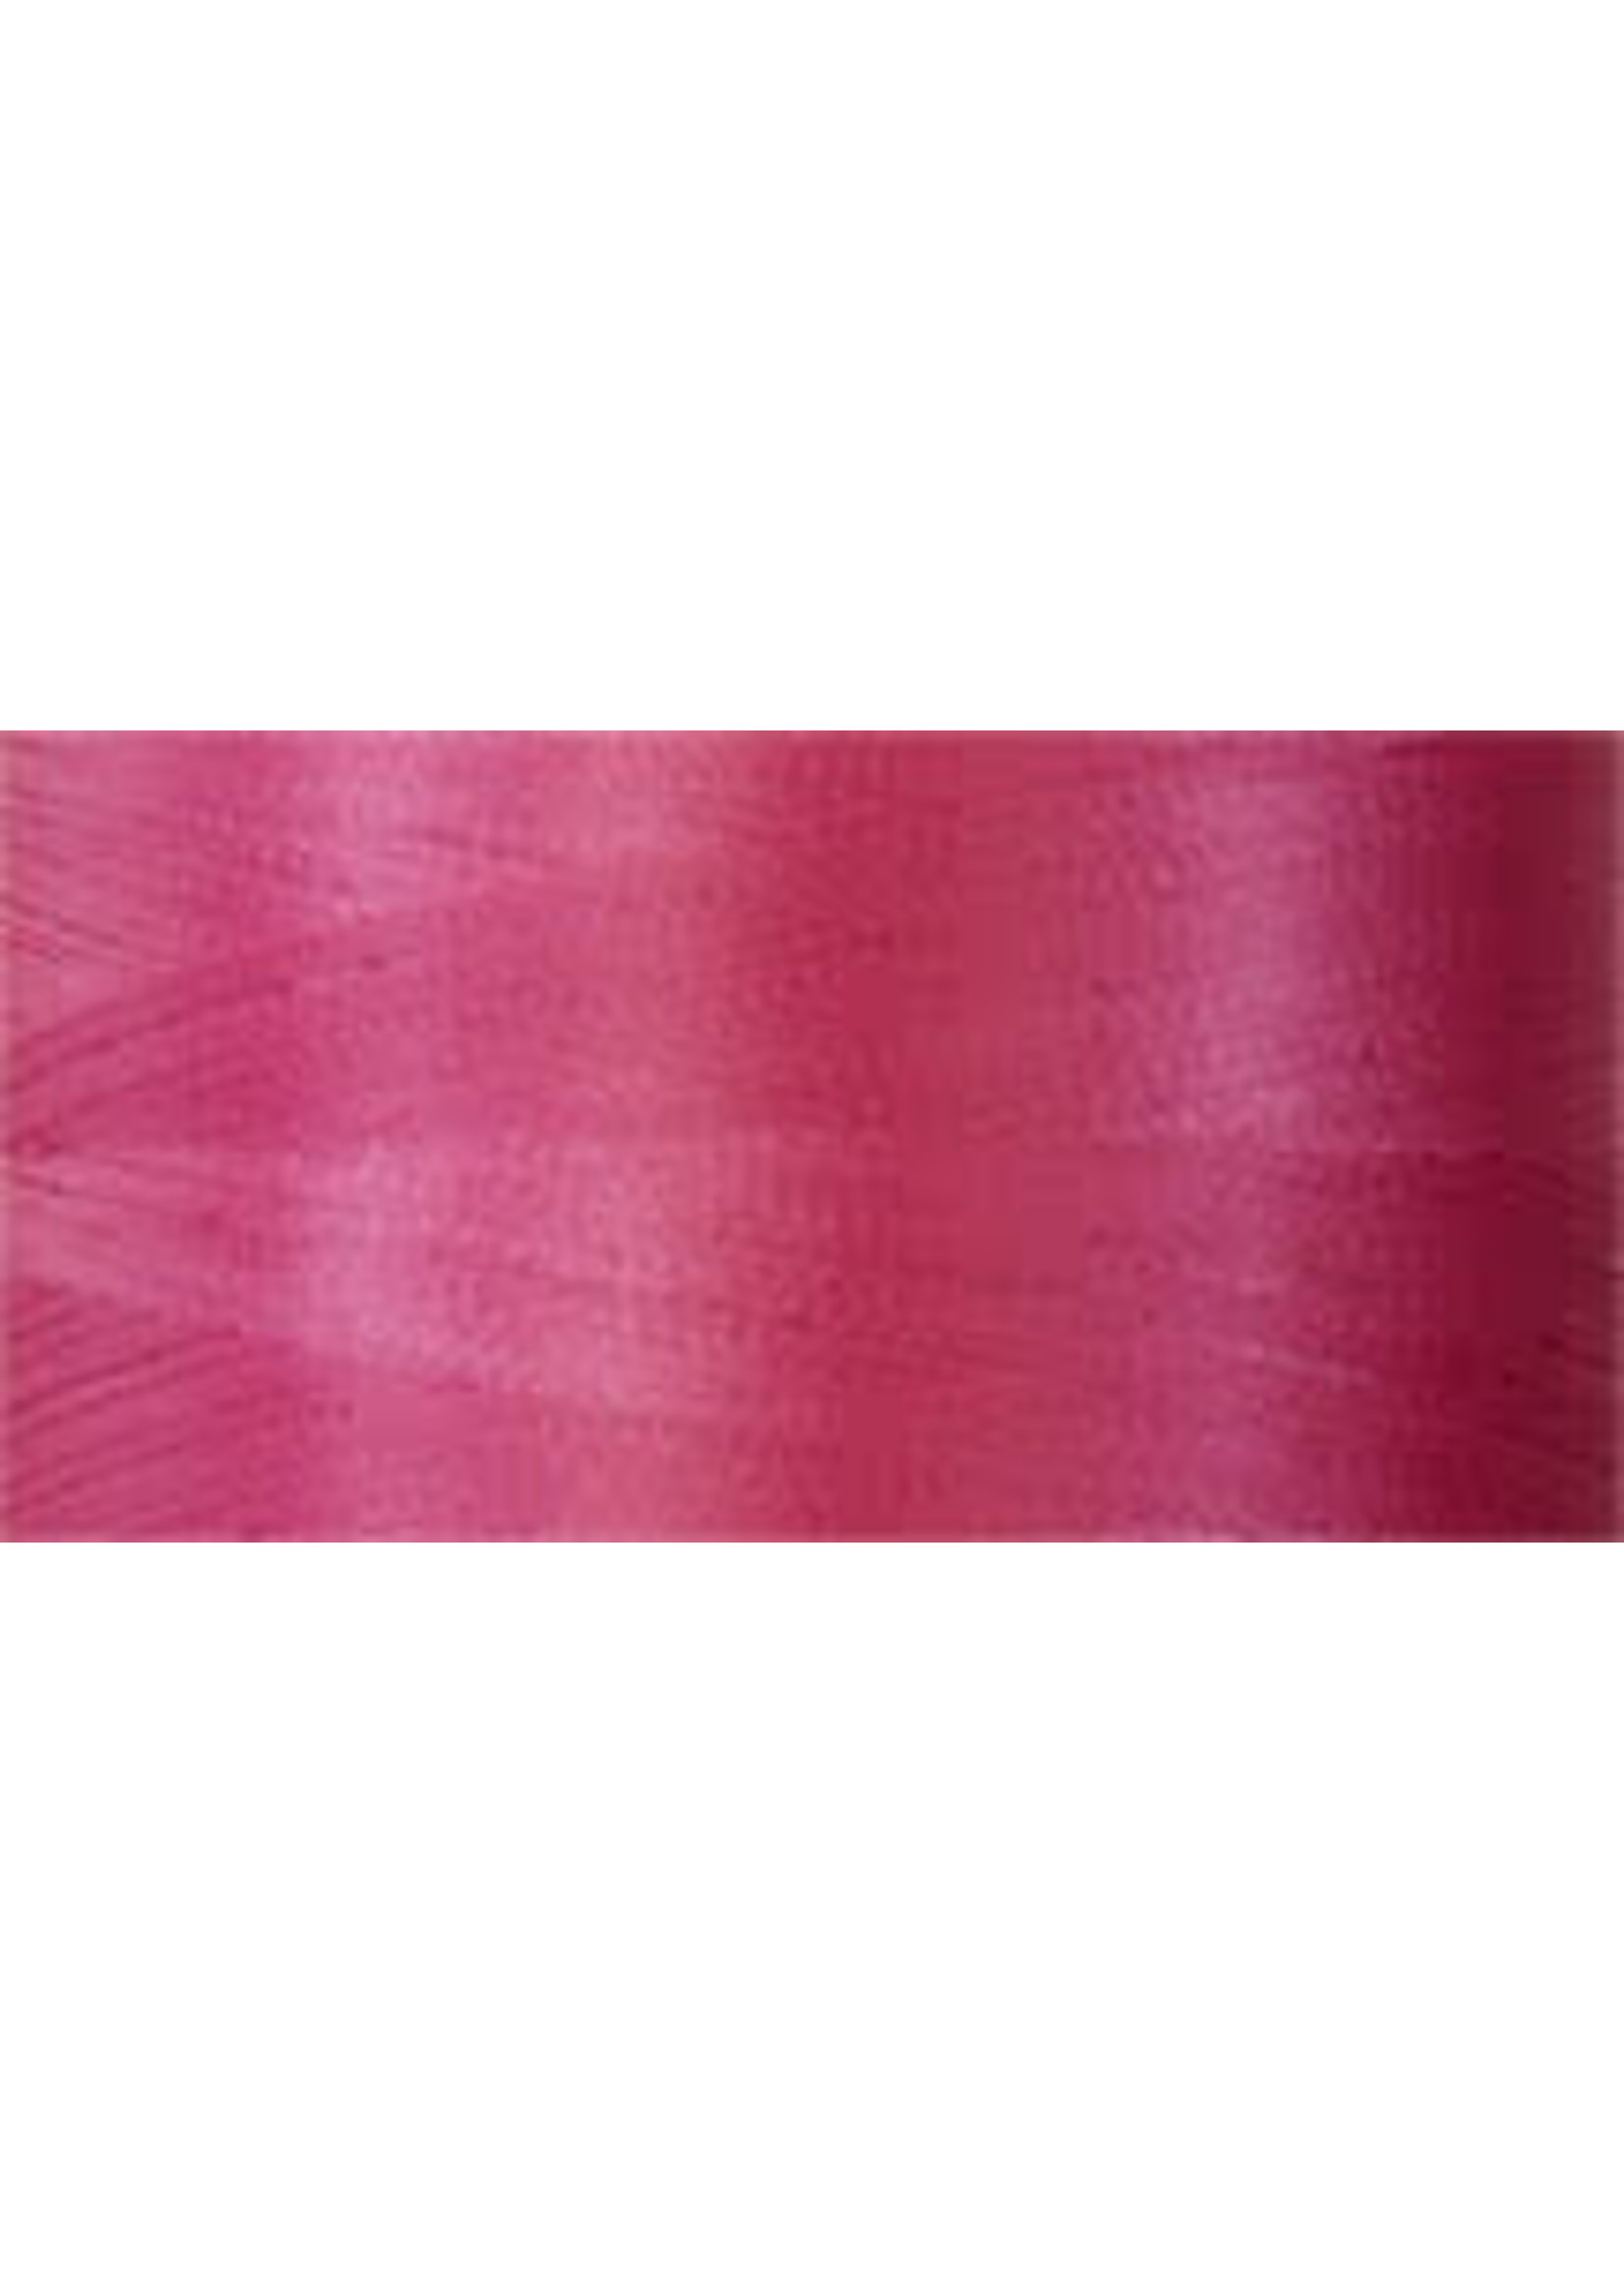 Superior Threads Bottom Line - #60 - 1300 m - 646 Hot Pink